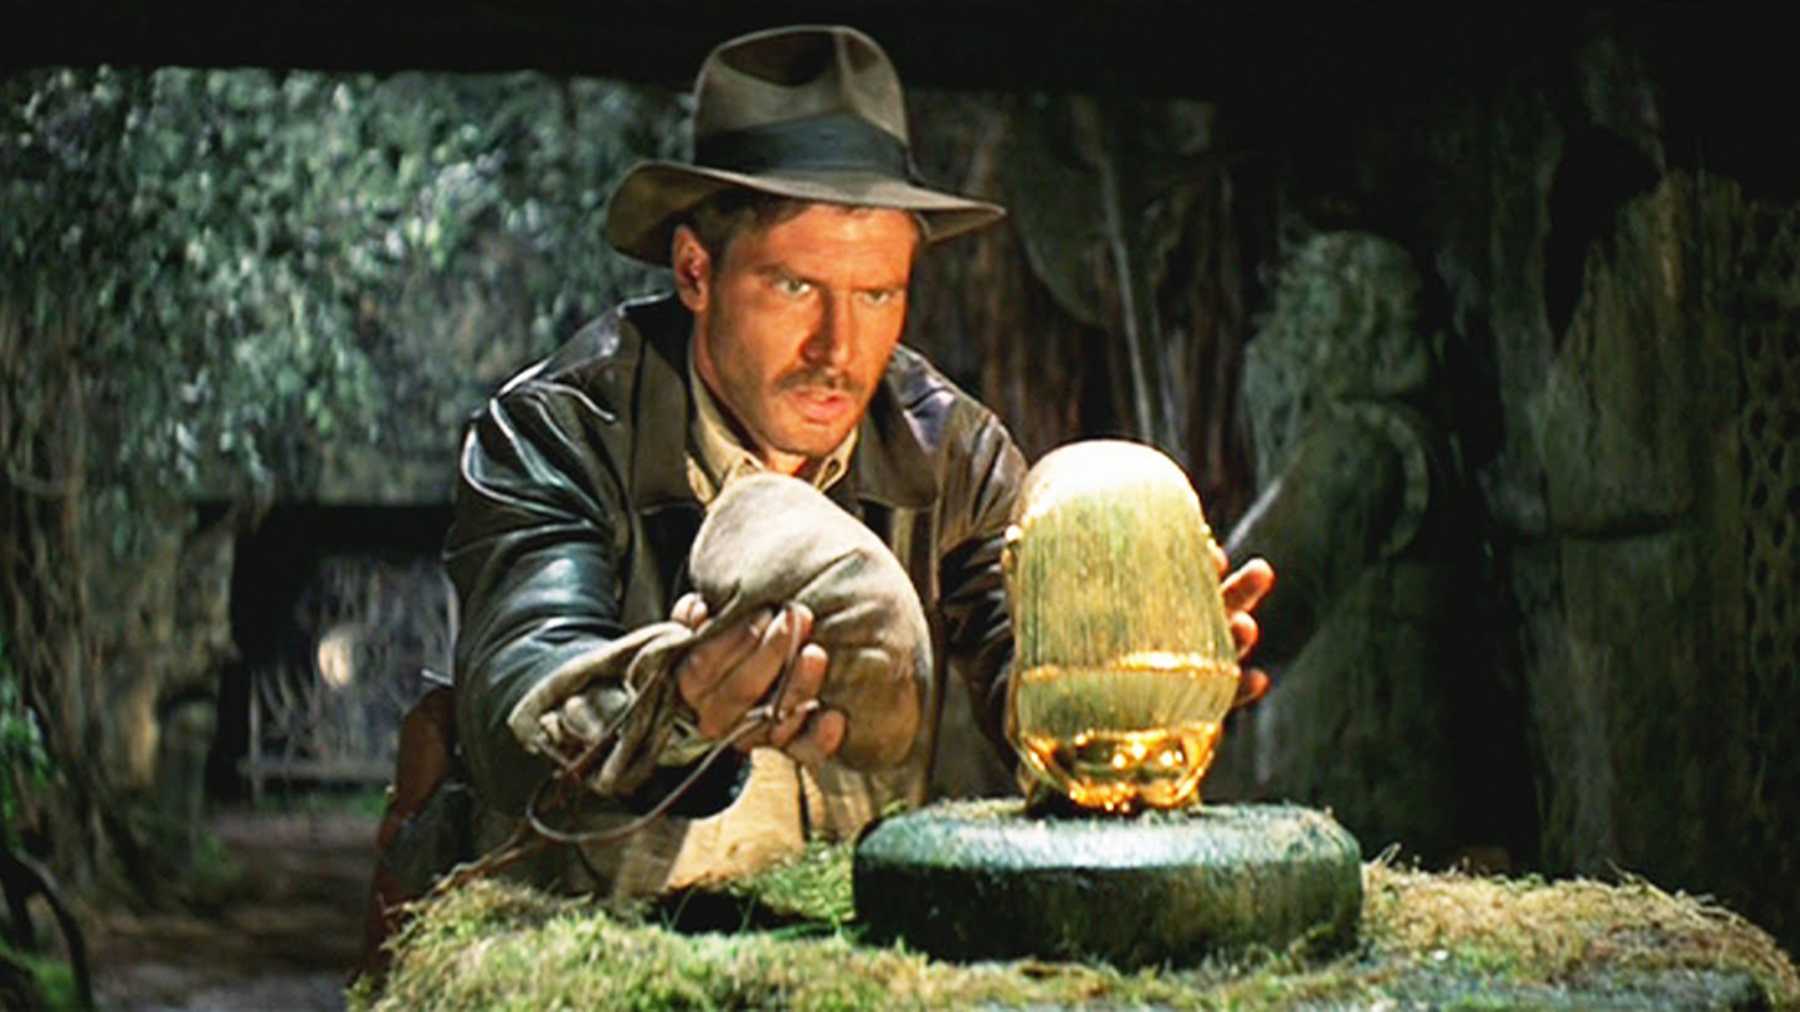 Indiana Jones i "Jakten på den försvunna skatten". 